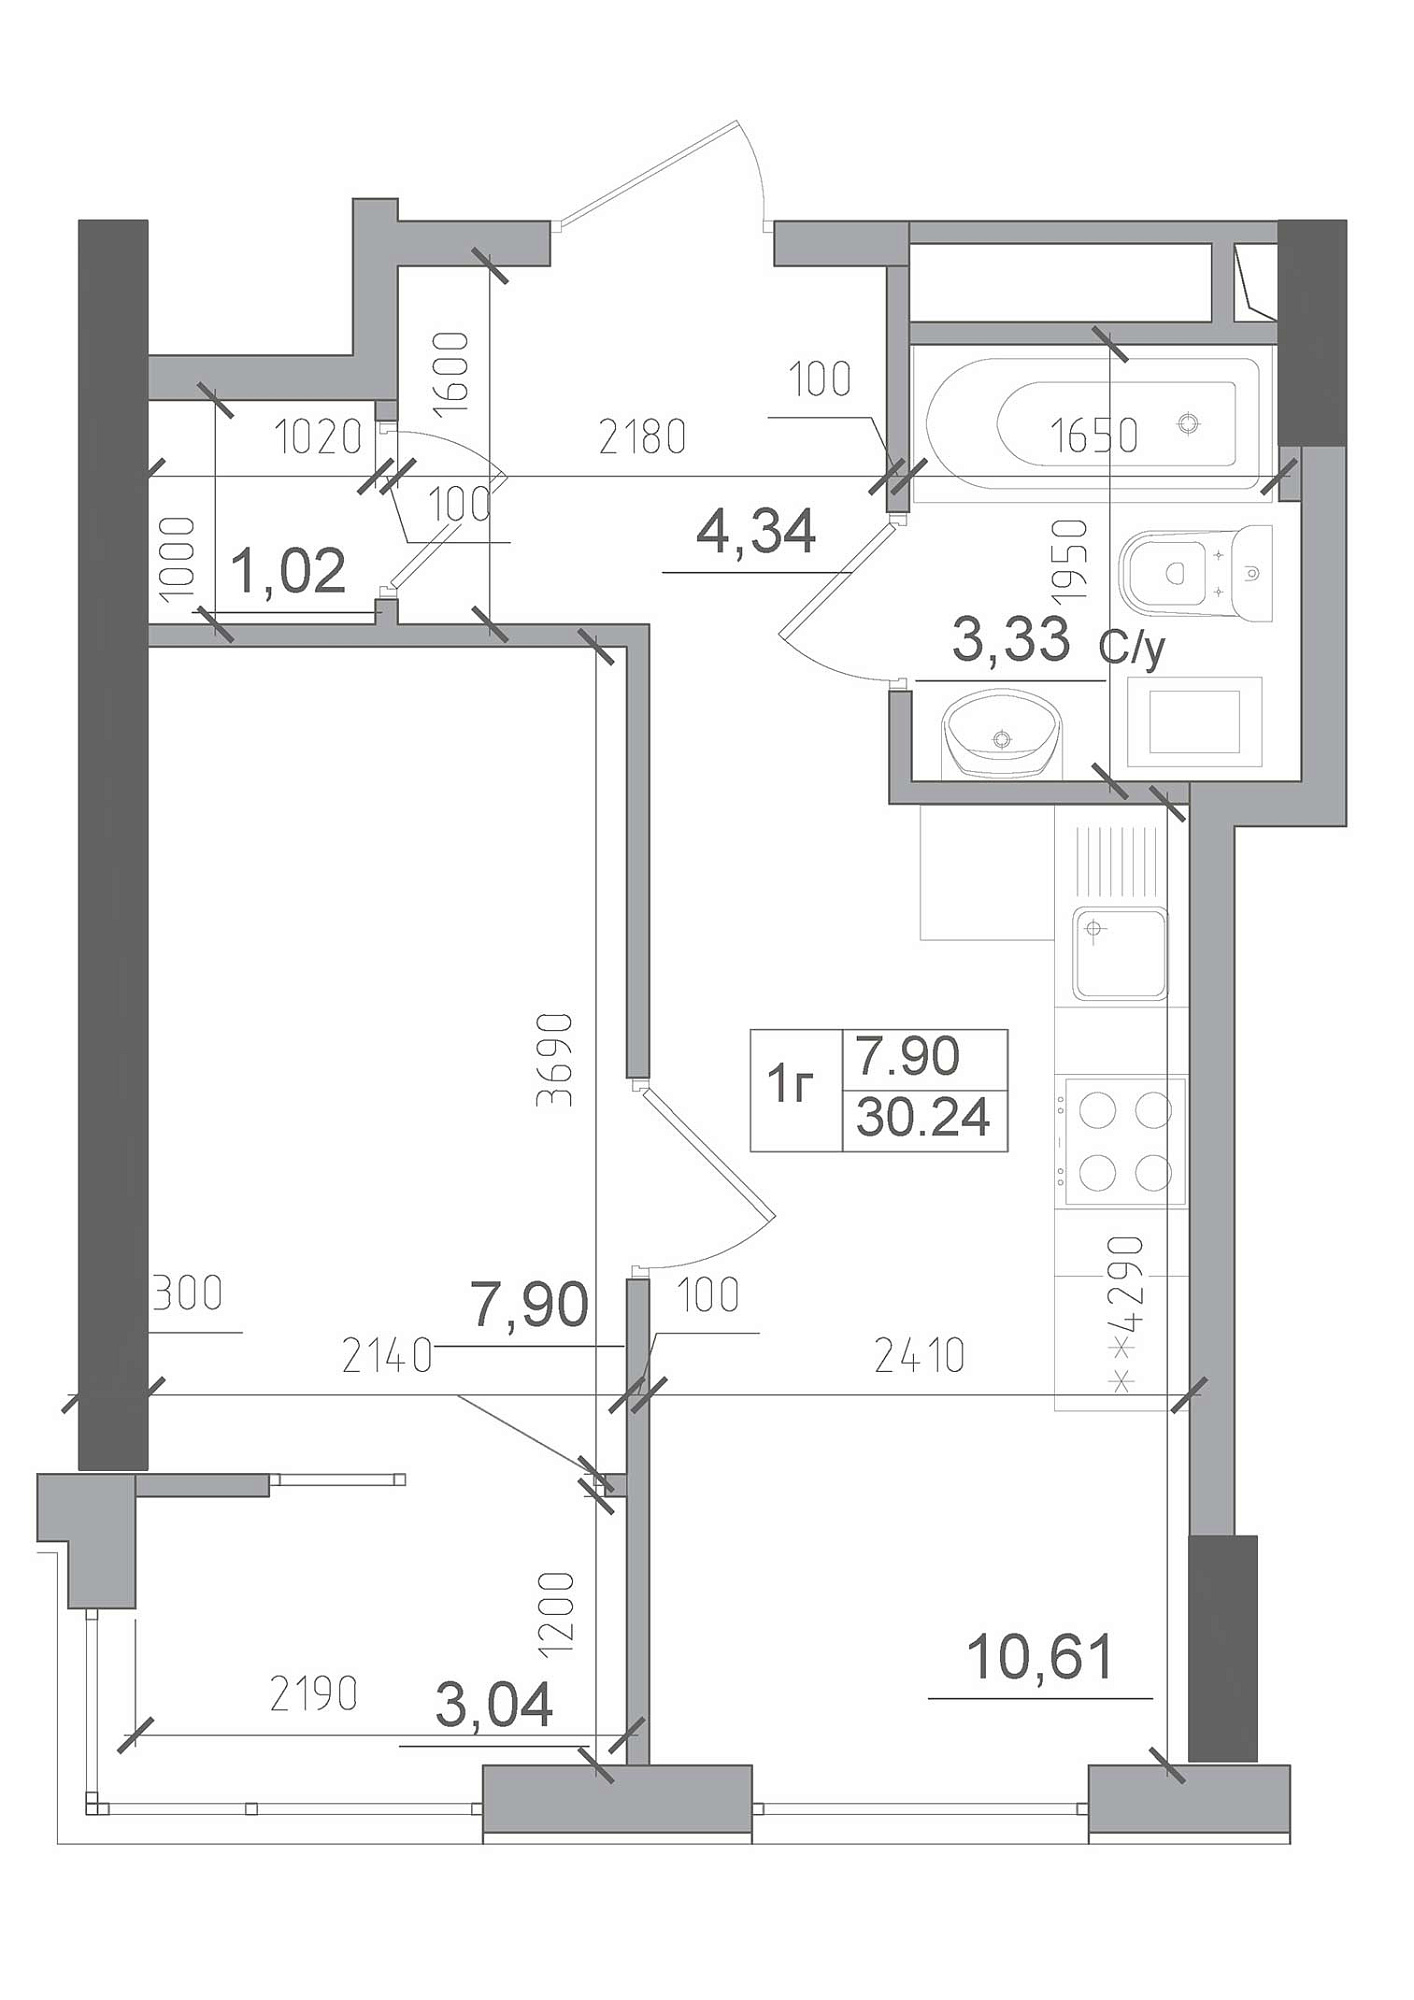 Планировка 1-к квартира площей 30.24м2, AB-22-12/00005.